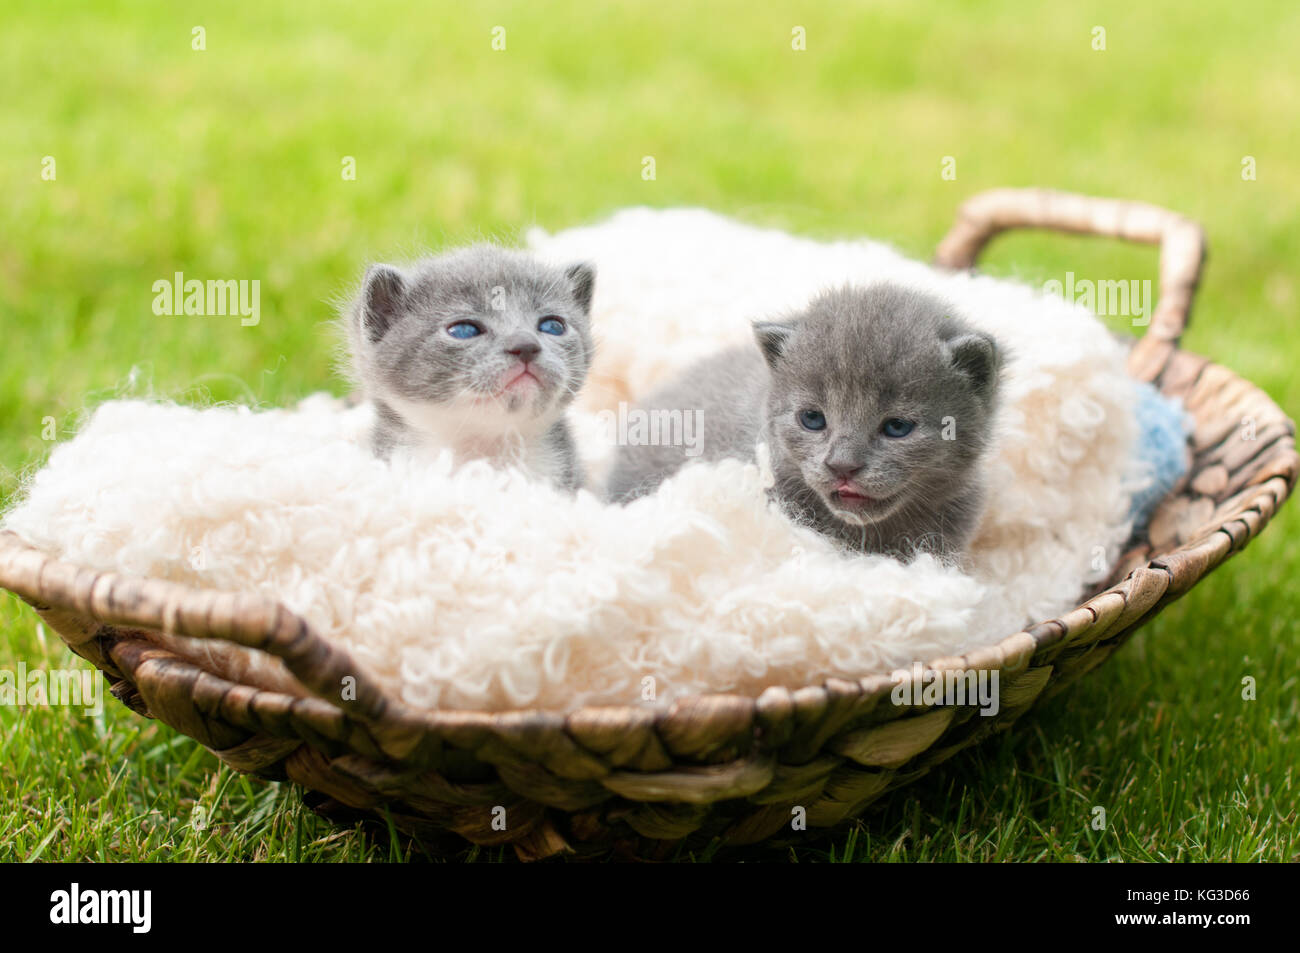 Due sweety gattini nel vecchio cesto in legno Foto Stock